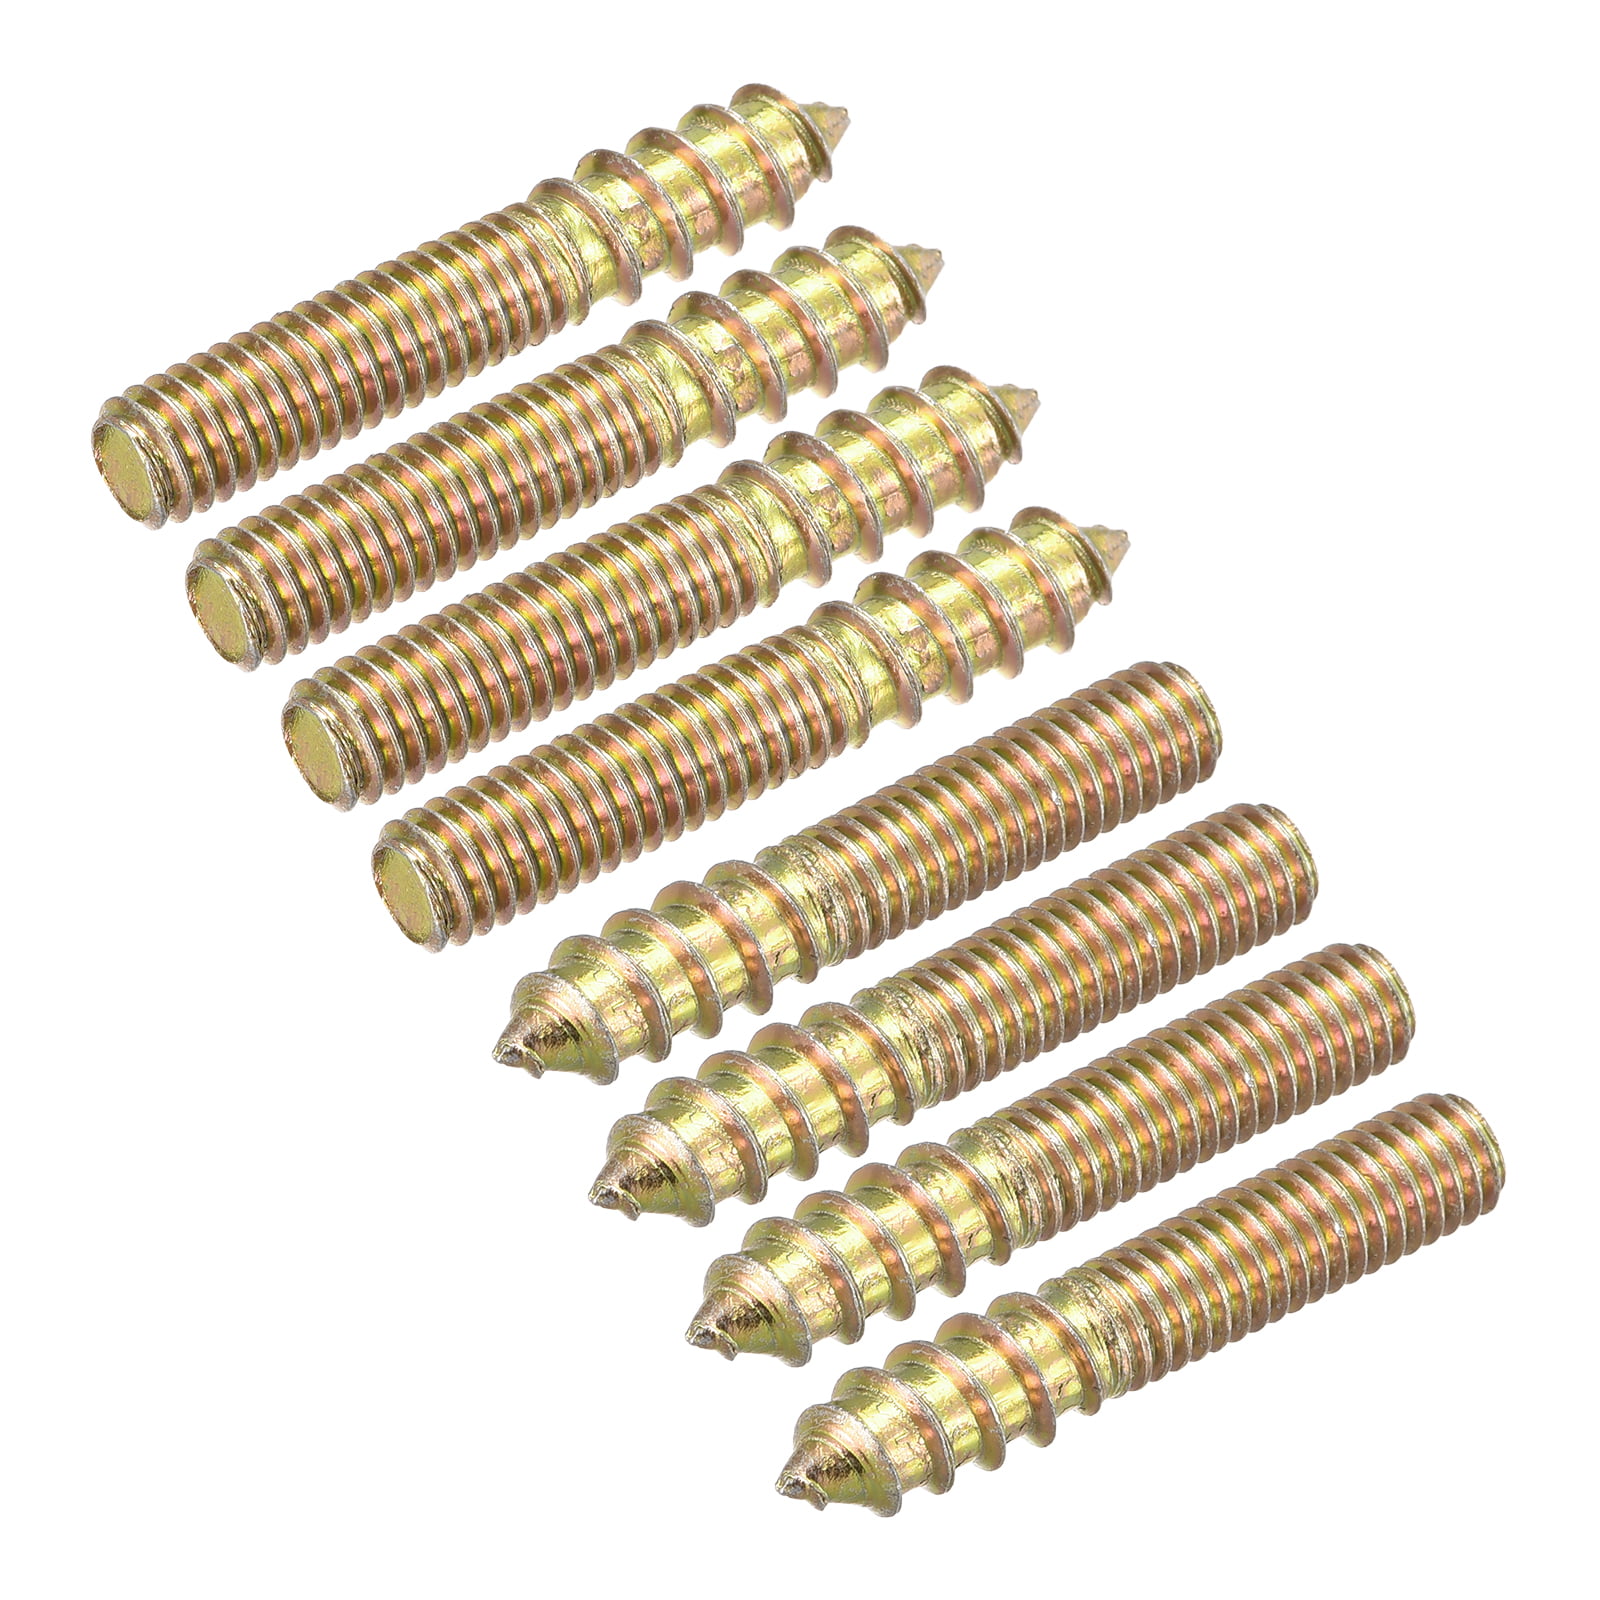 M6 X30mm Brass Set Screw Kit, full thread, hex head set screws